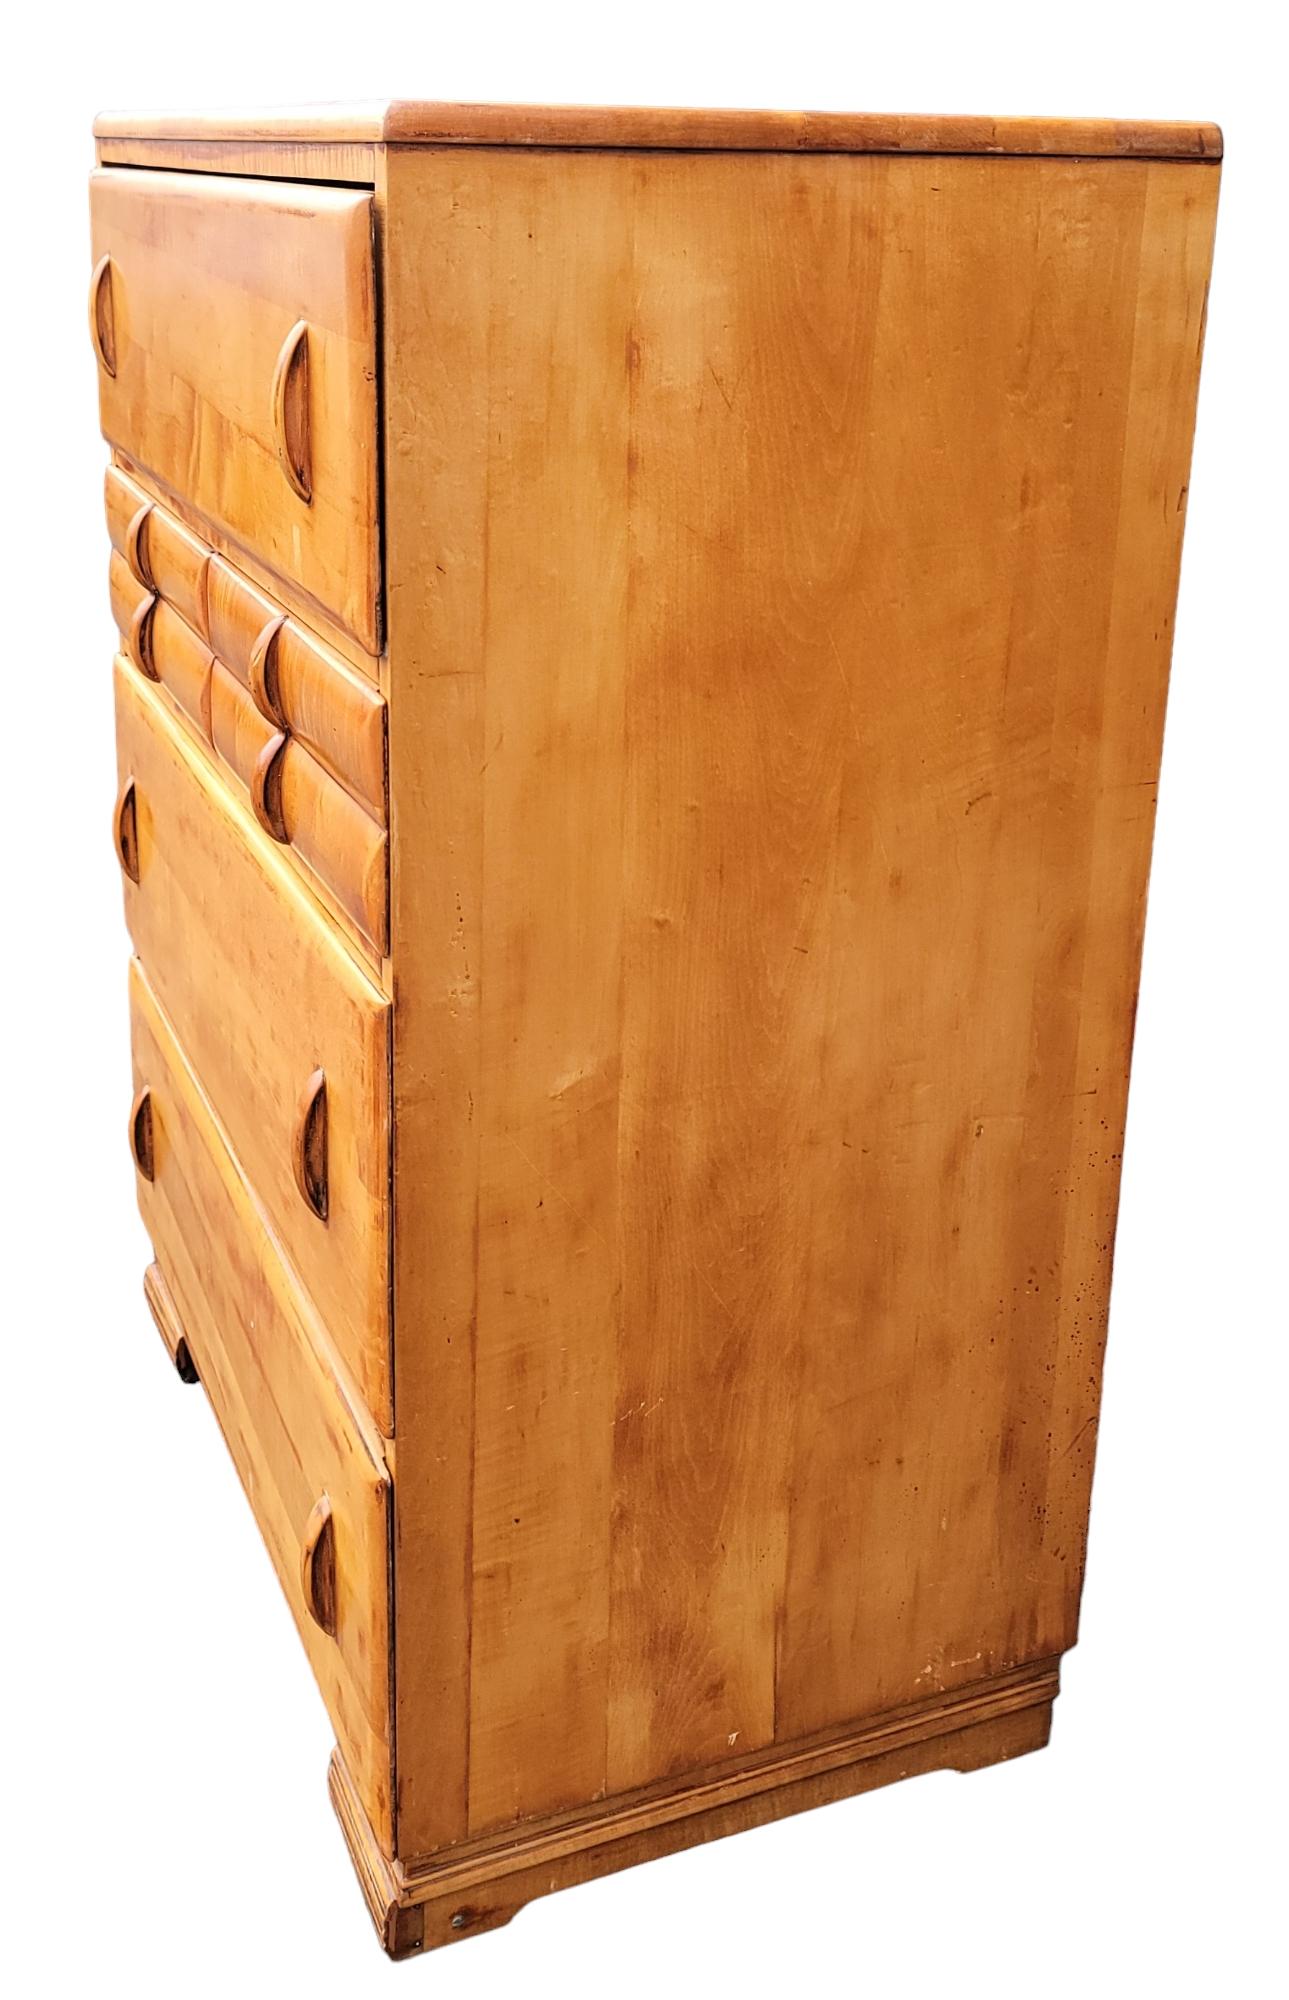 Rare commode du milieu du siècle  5 tiroirs. Le tiroir supérieur comporte des fentes dans les tiroirs qui permettent d'y ranger des sections. Chaque tiroir offre beaucoup d'espace et de possibilités d'utilisation. Dimensions approximatives - 21 de